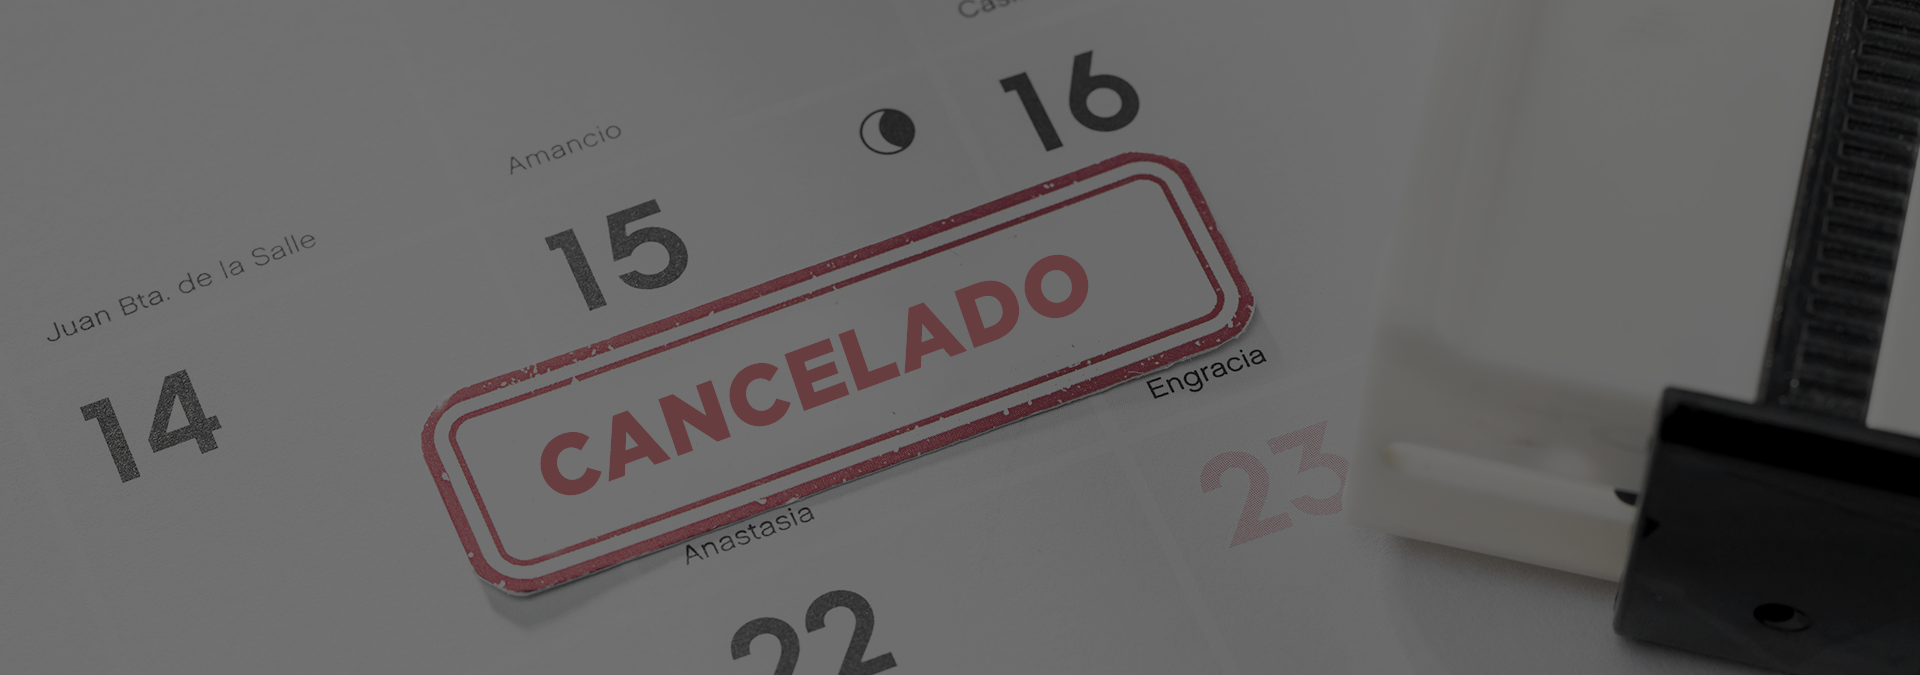 Foto de un calendario con la palabra cancelado